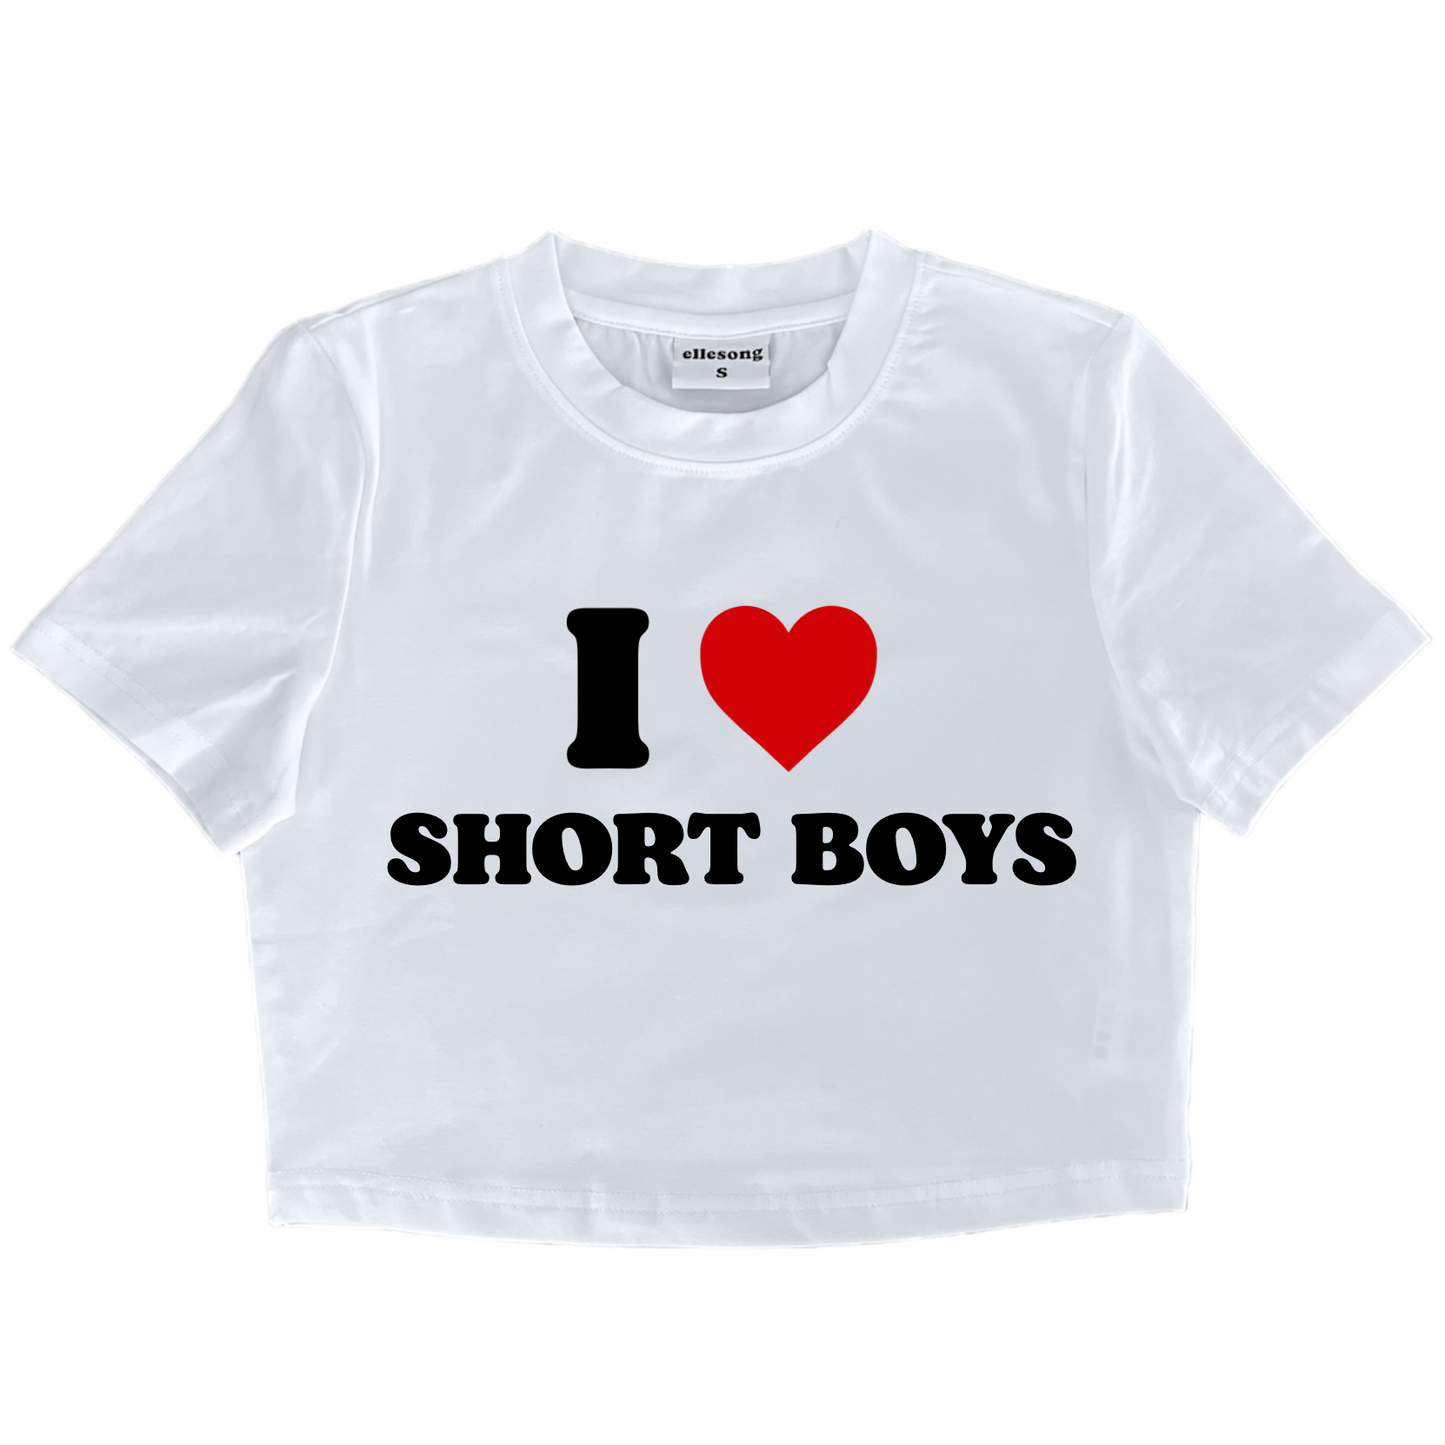 I Heart Short Boys Baby Tee